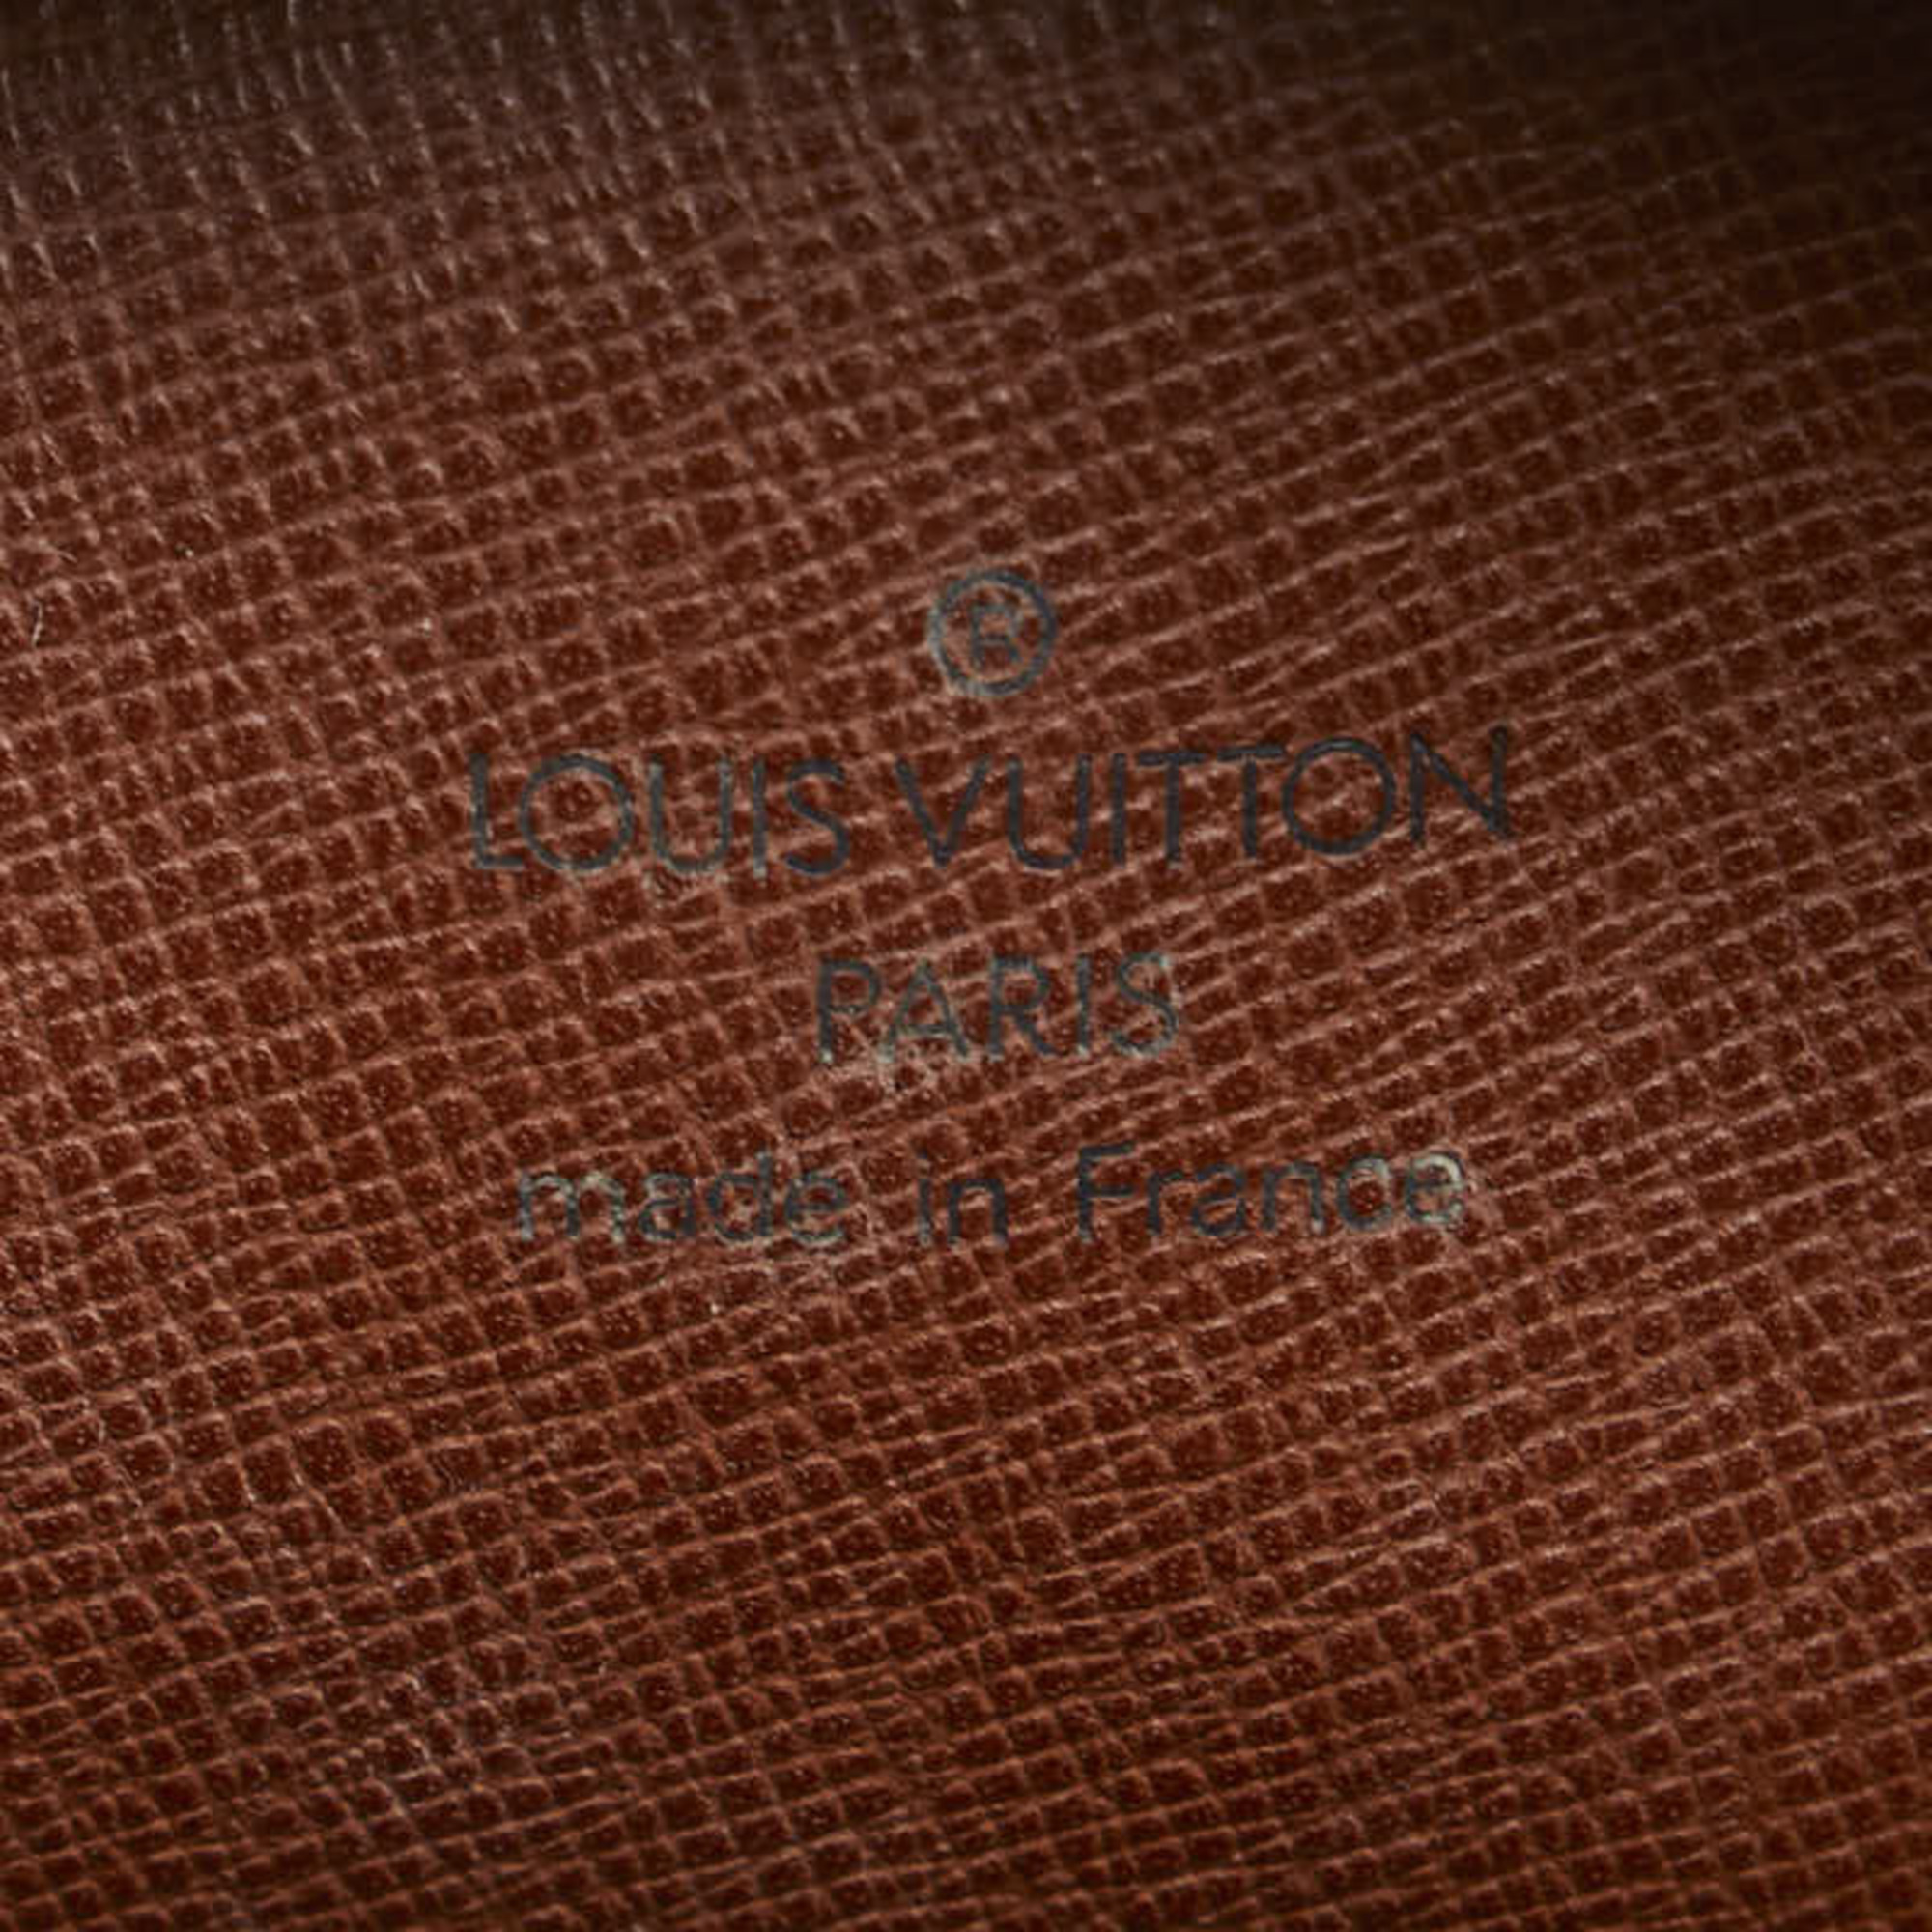 Louis Vuitton Monogram Amazon Shoulder Bag M45236 Brown PVC Leather Women's LOUIS VUITTON